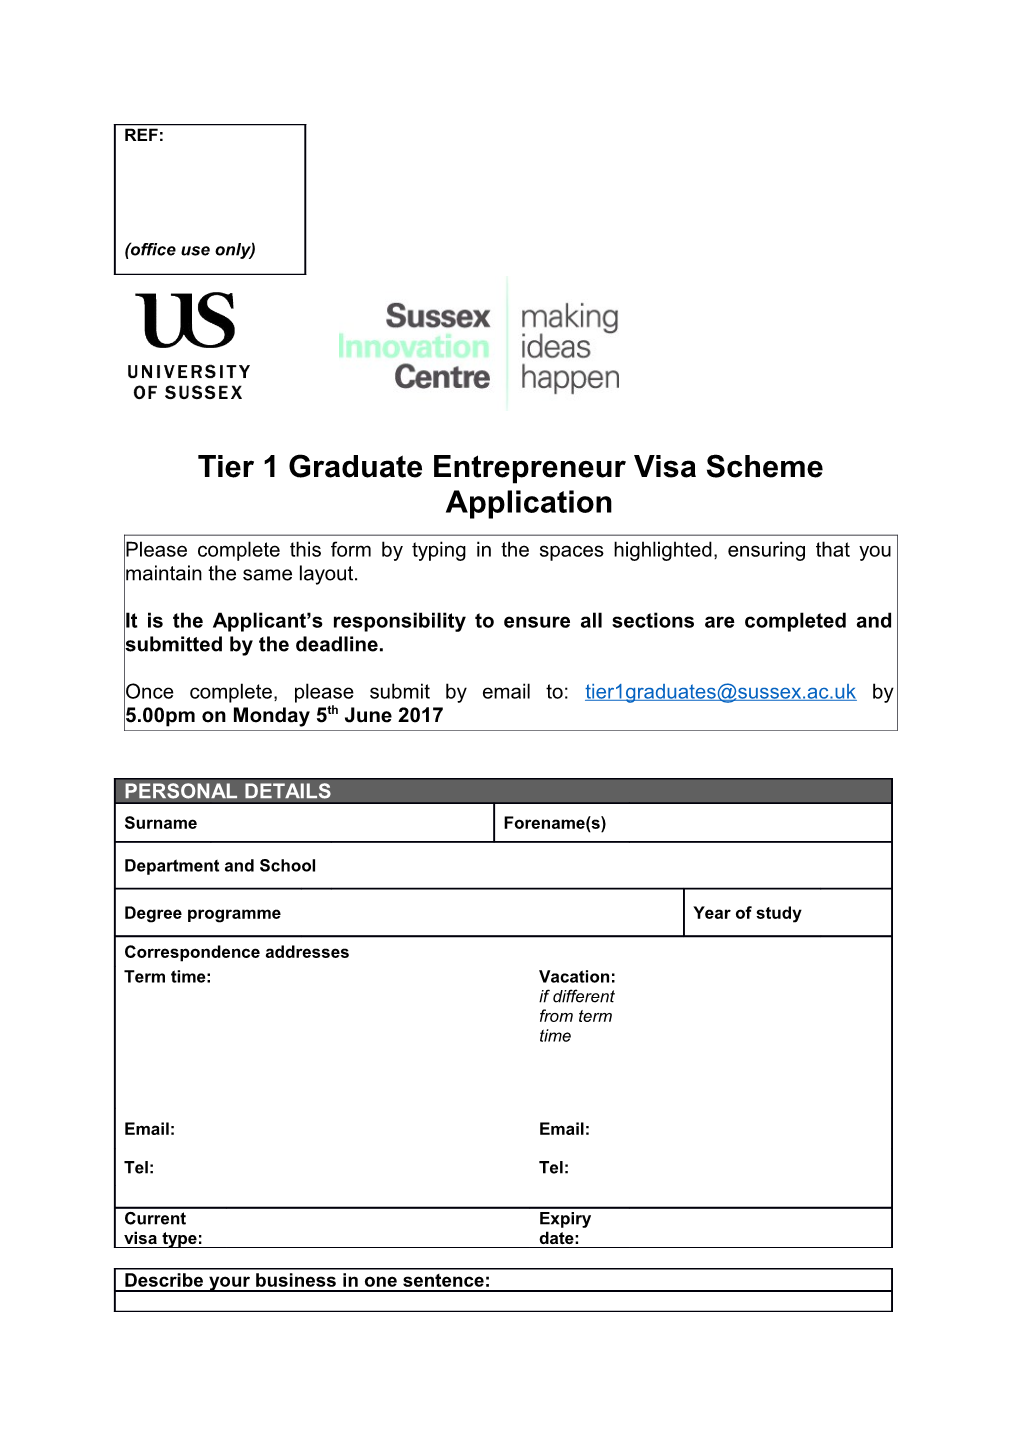 Tier 1 Graduate Entrepreneur Visa Scheme Application